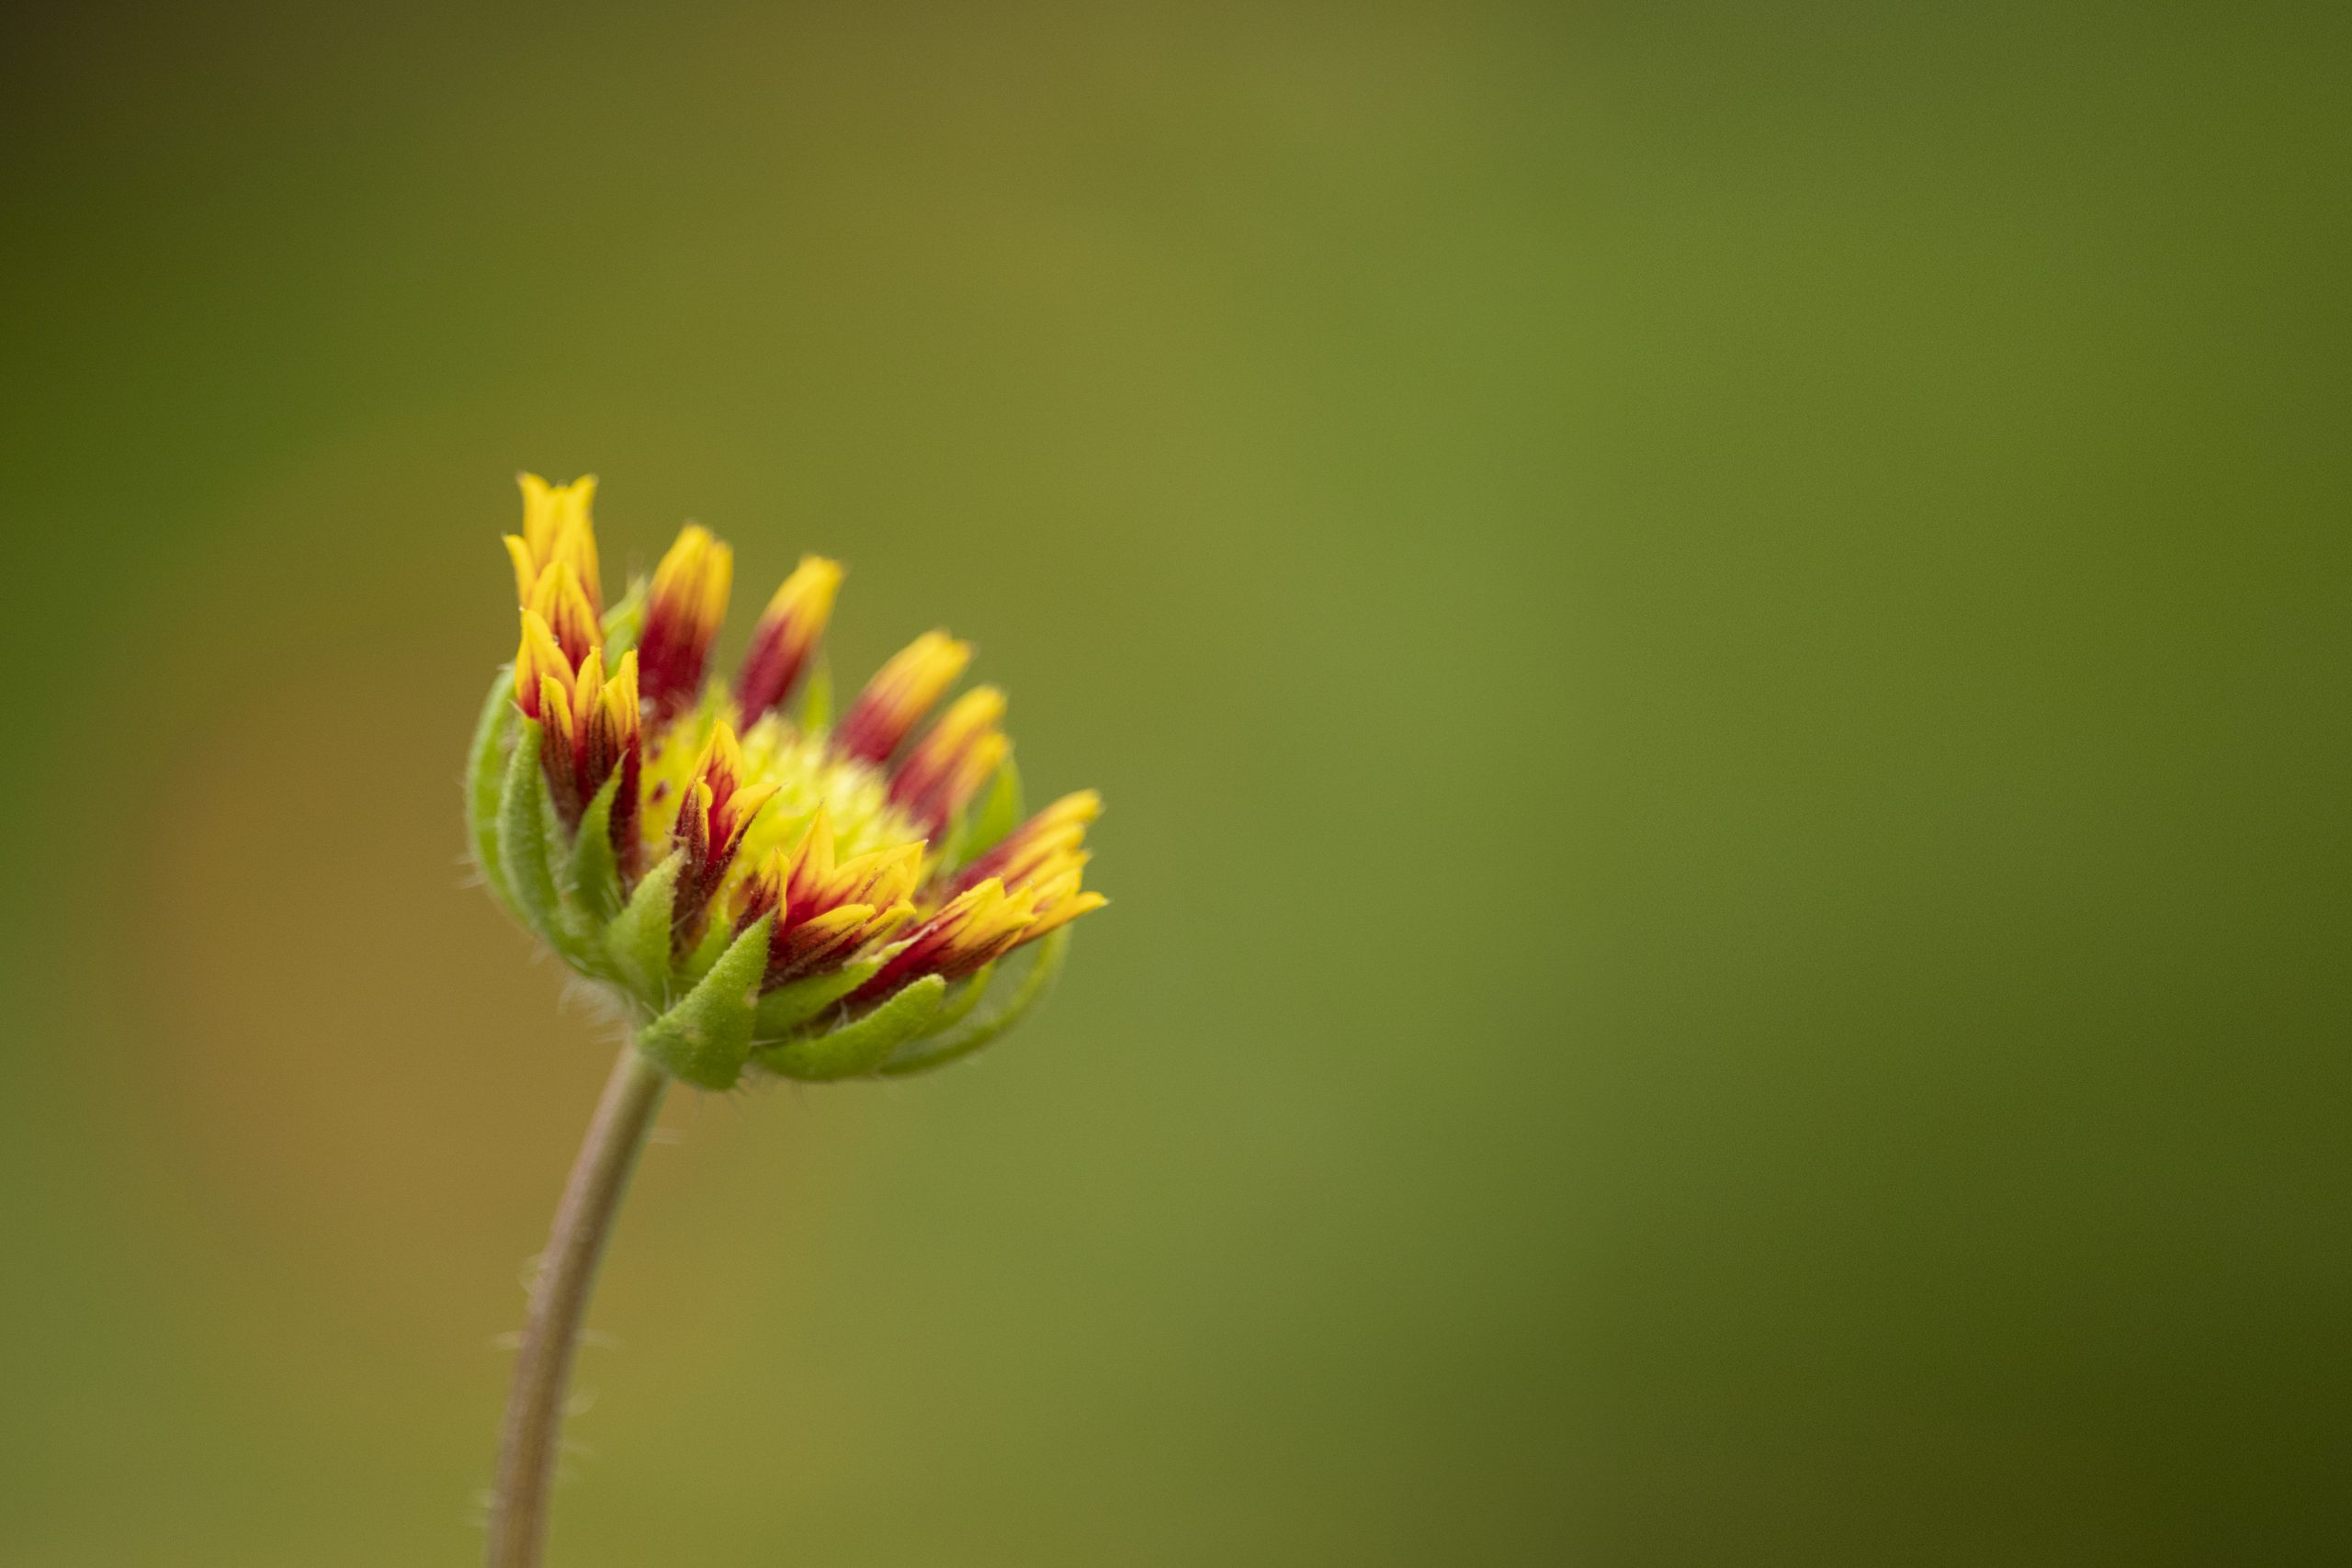 A flower bud – Chrysanthemum